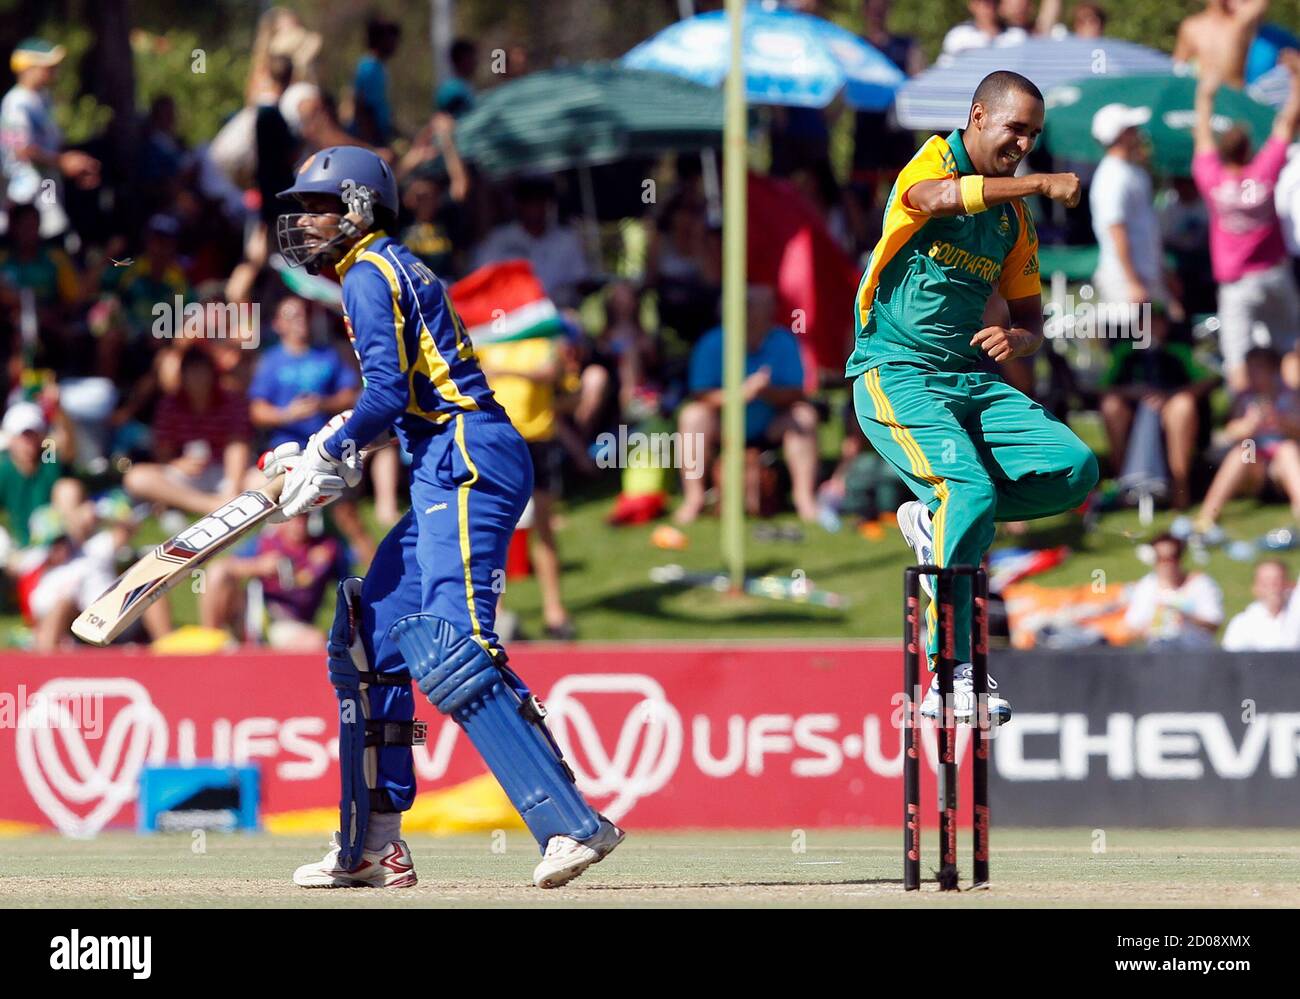 Der Südafrikaner Robin Peterson (R) feiert die Entlassung von Sri Lankas Upul Tharanga (L), der von Colin Ingram beim dritten eintägigen internationalen Cricket-Spiel in Bloemfontein am 17. Januar 2012 erwischt wurde. REUTERS/Siphiwe Sibeko (SÜDAFRIKA - Tags: SPORT CRICKET) Stockfoto